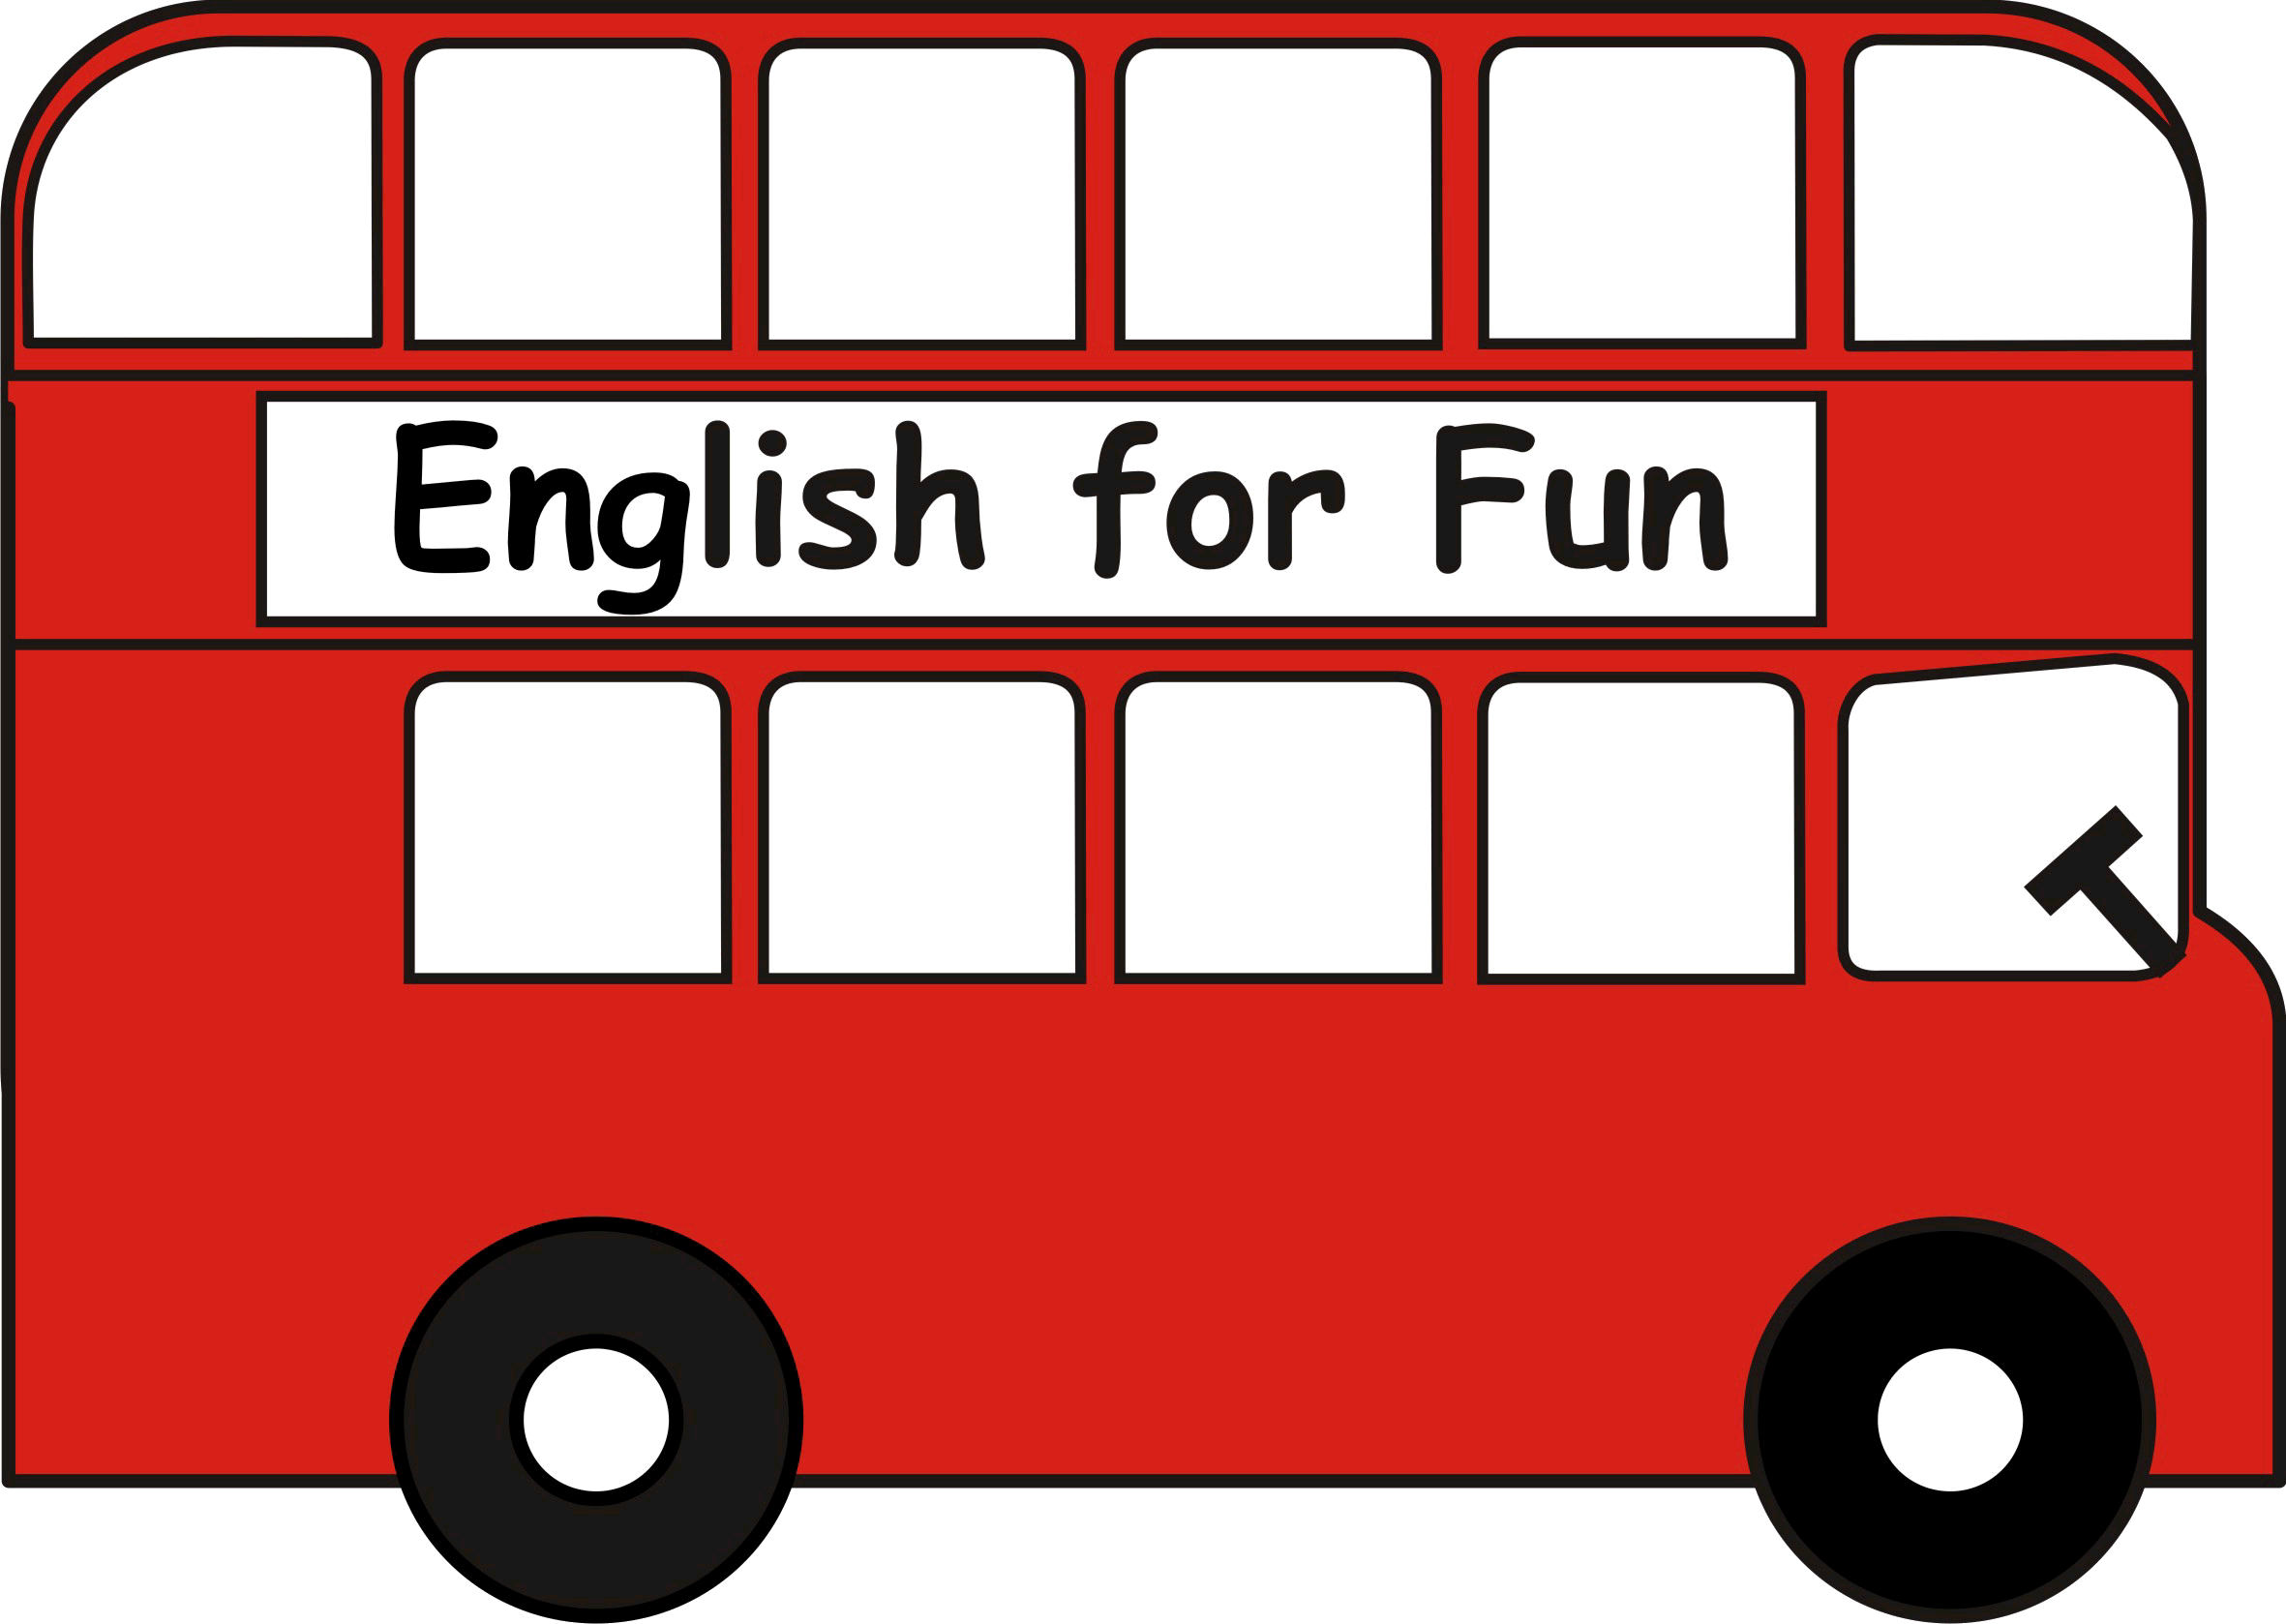 English for fun. English is fun. English is fun картинки. Английский язык иконка.